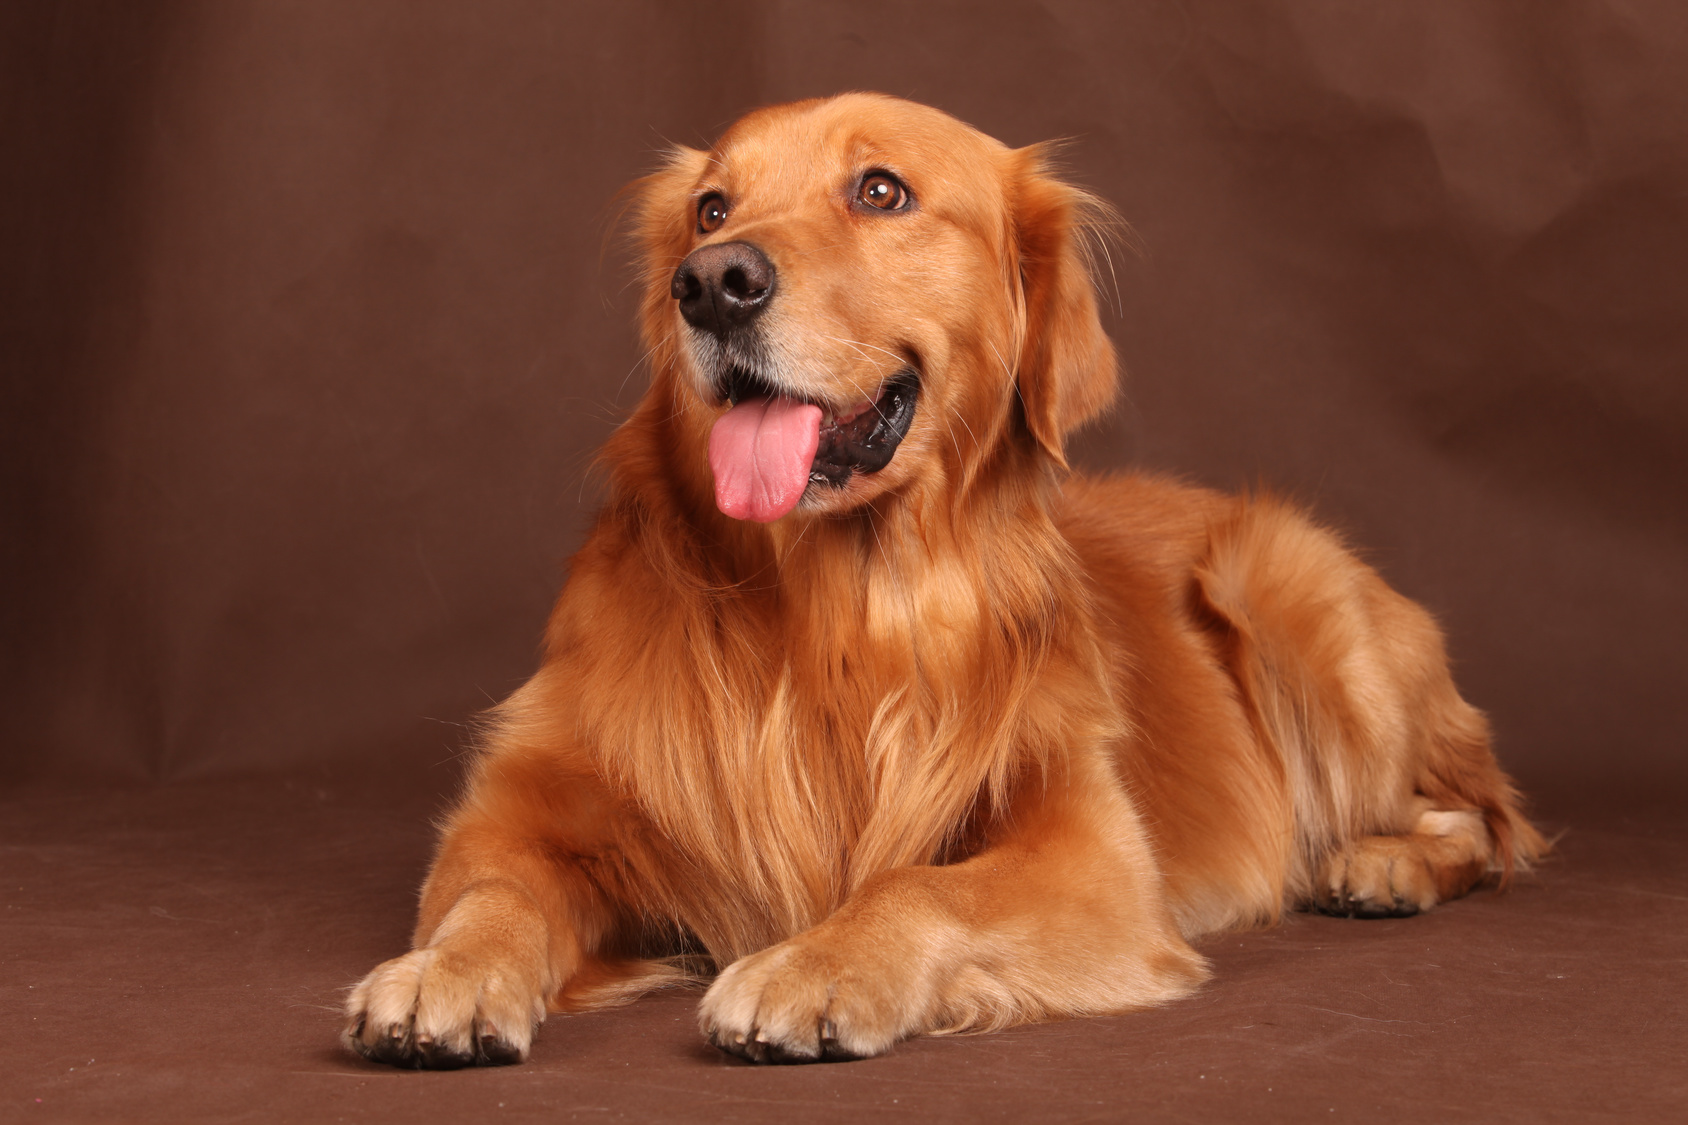 Golden Retriever dog